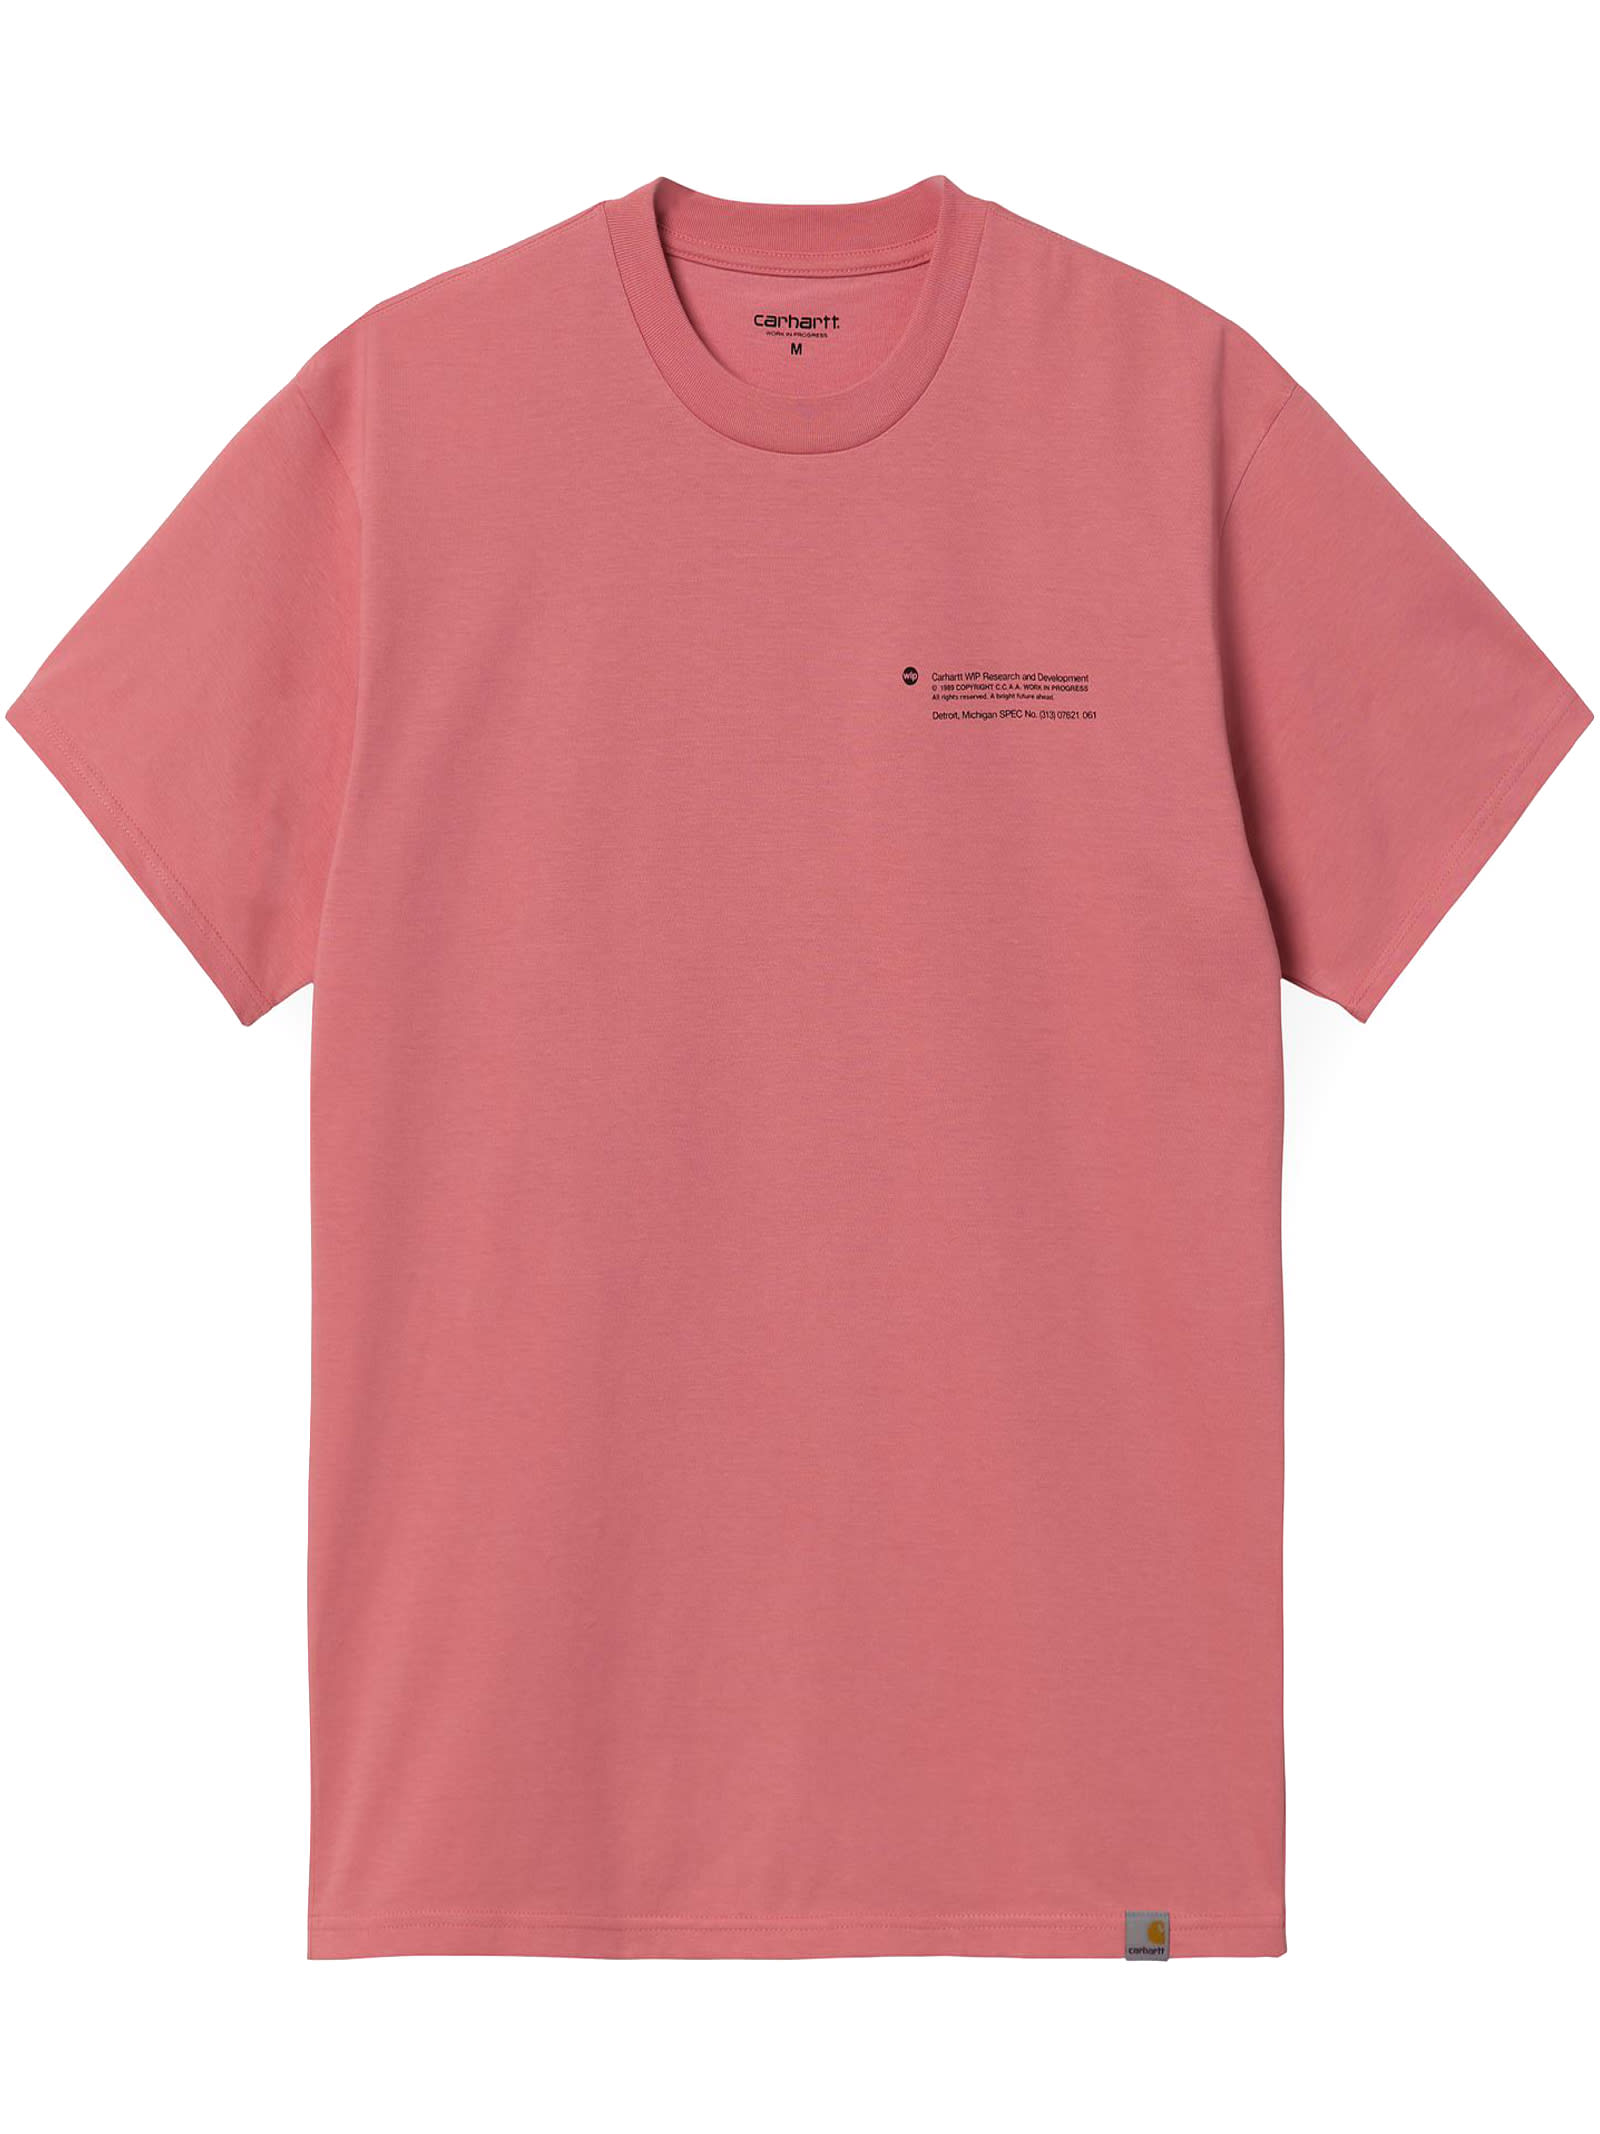 Carhartt Pink Cotton T-shirt